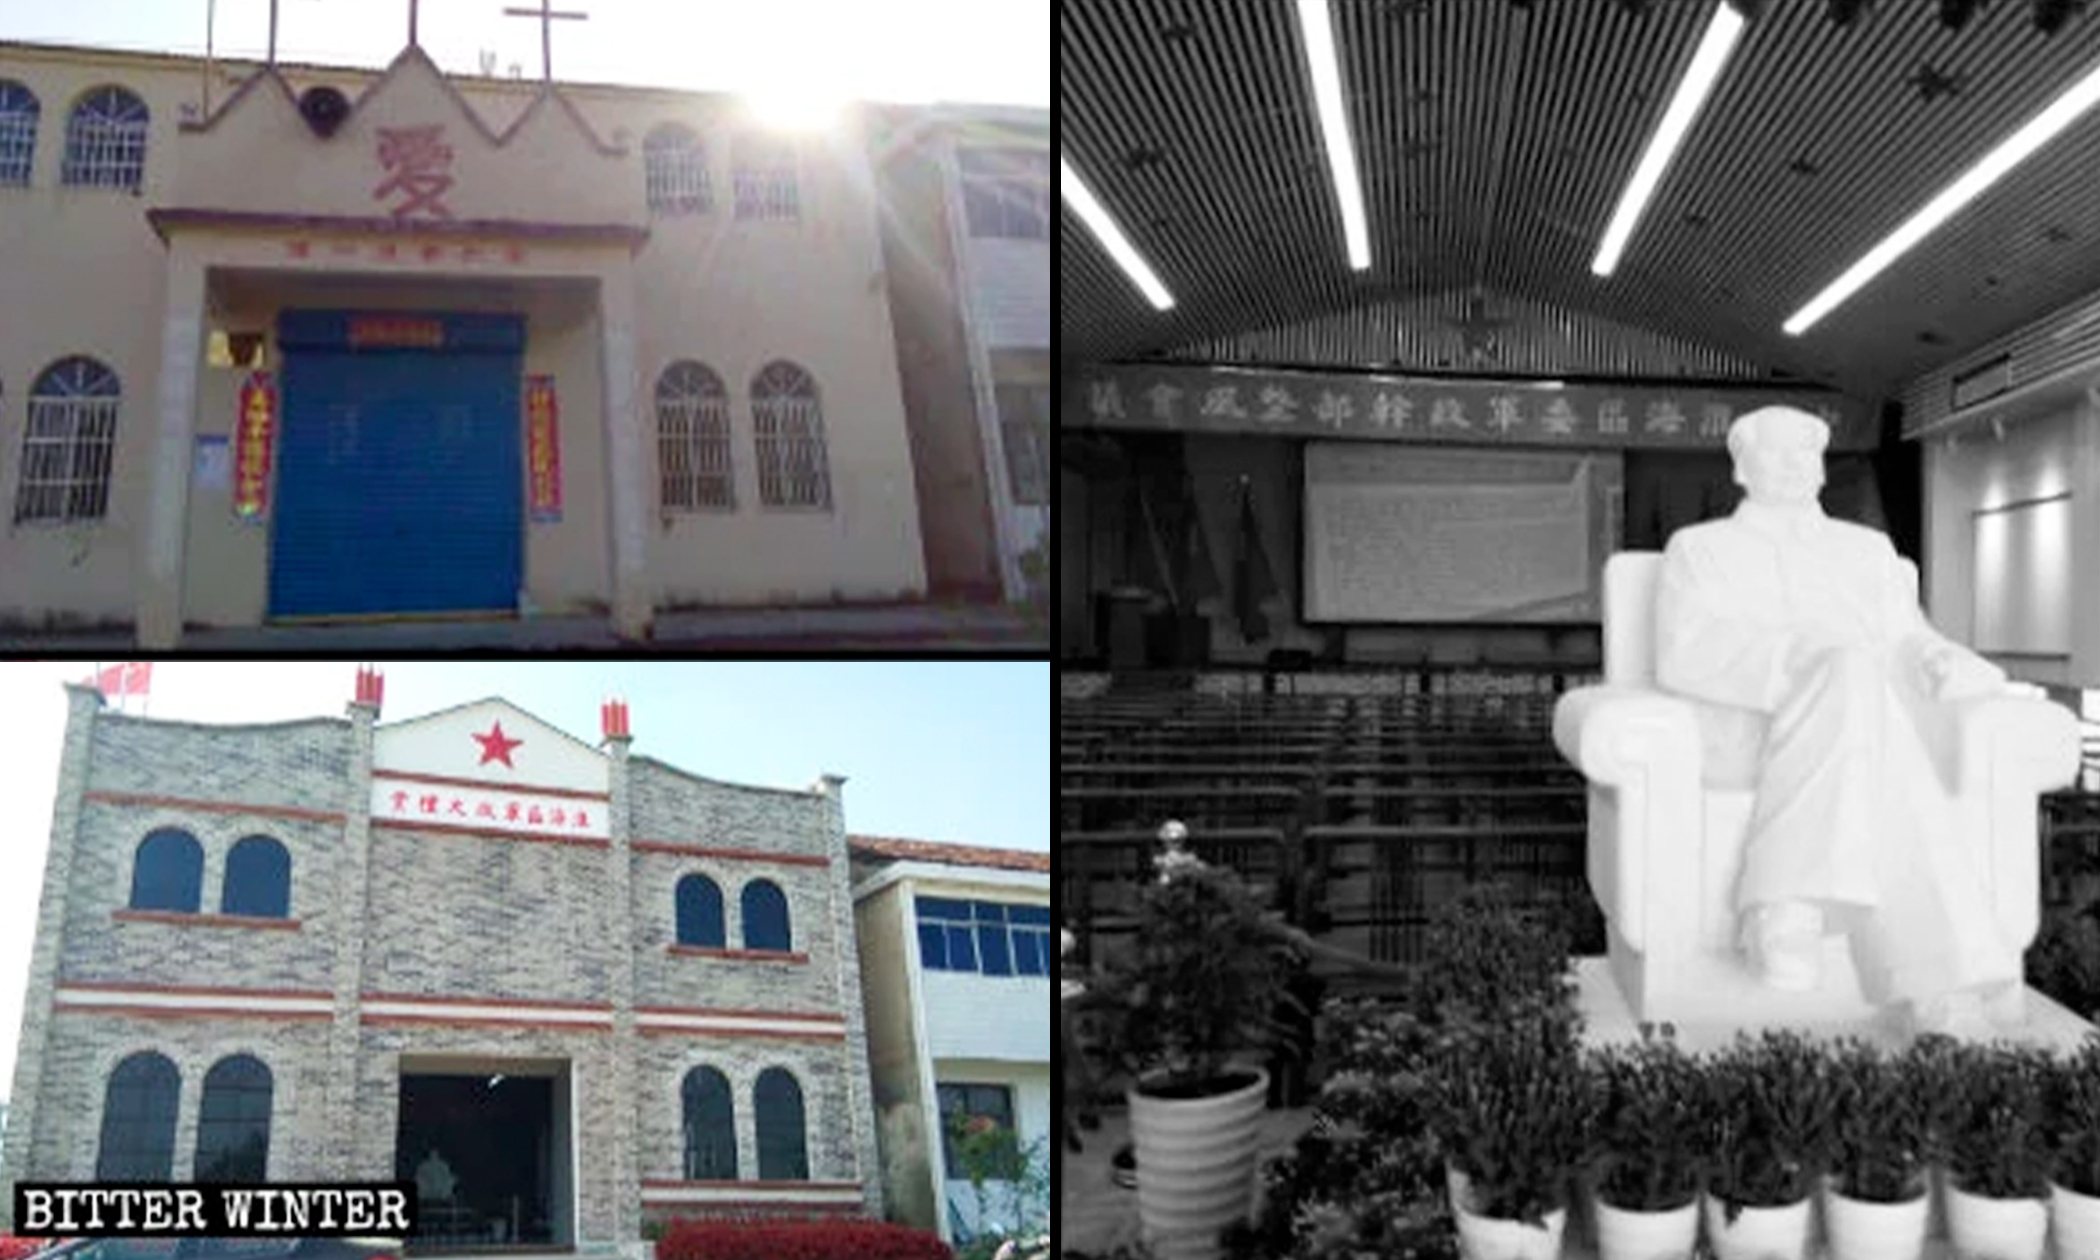 Một nhà thờ Tam tự ở huyện Thuật Dương đã được chuyển thành nơi tưởng niệm Hồng quân, và bức tượng của Mao Trạch Đông được đặt gần lối vào. (Ảnh: Đăng dưới sự cho phép của Bitter Winter)